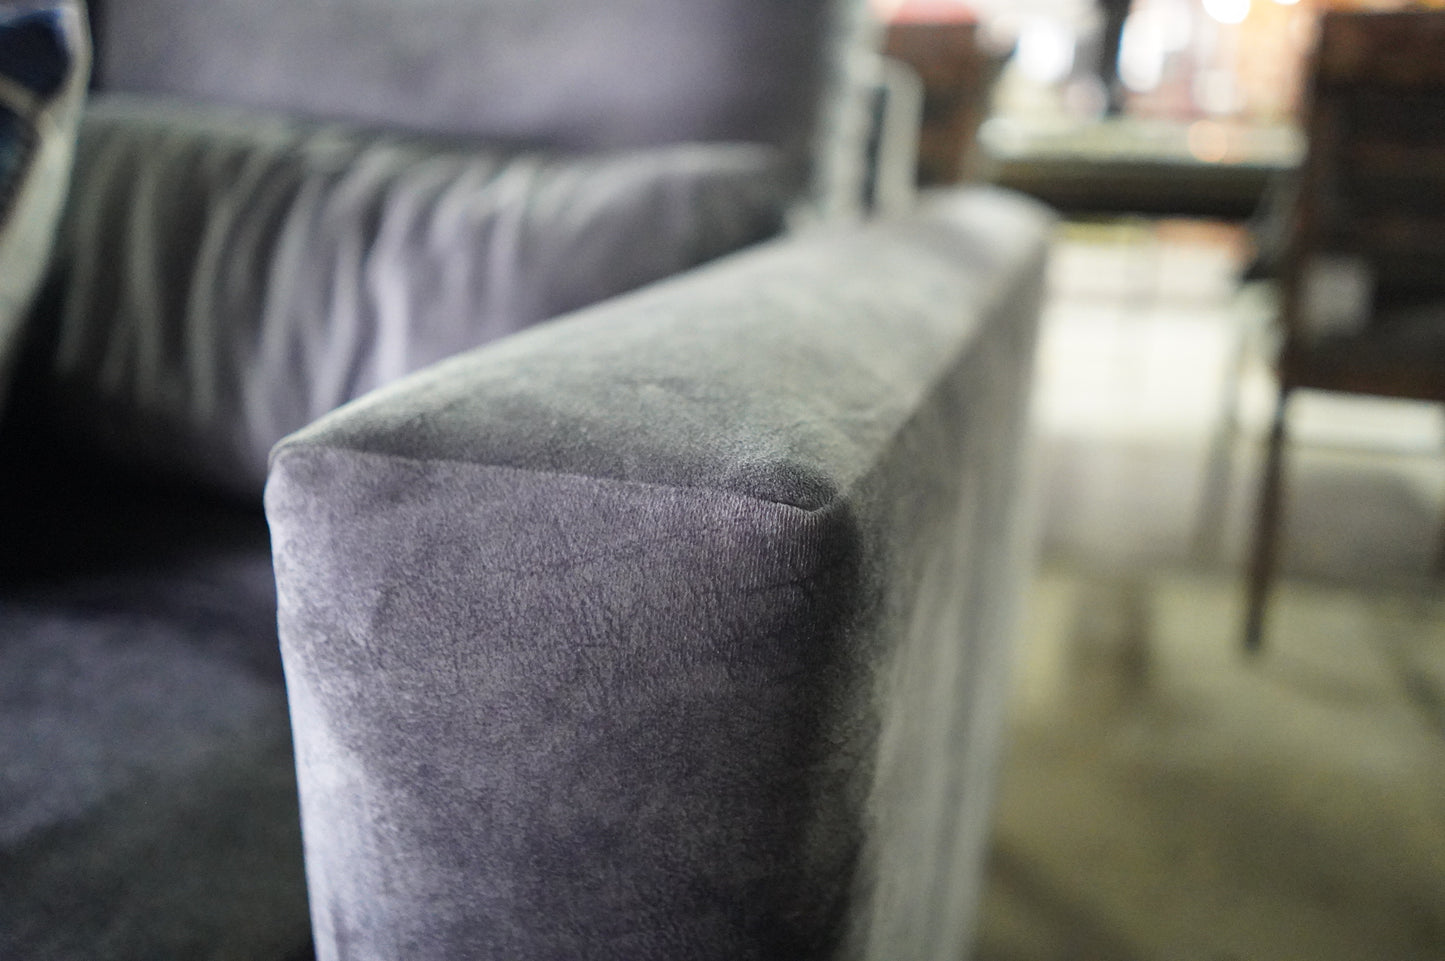 Couch Charcoal Grey Velvet Feel